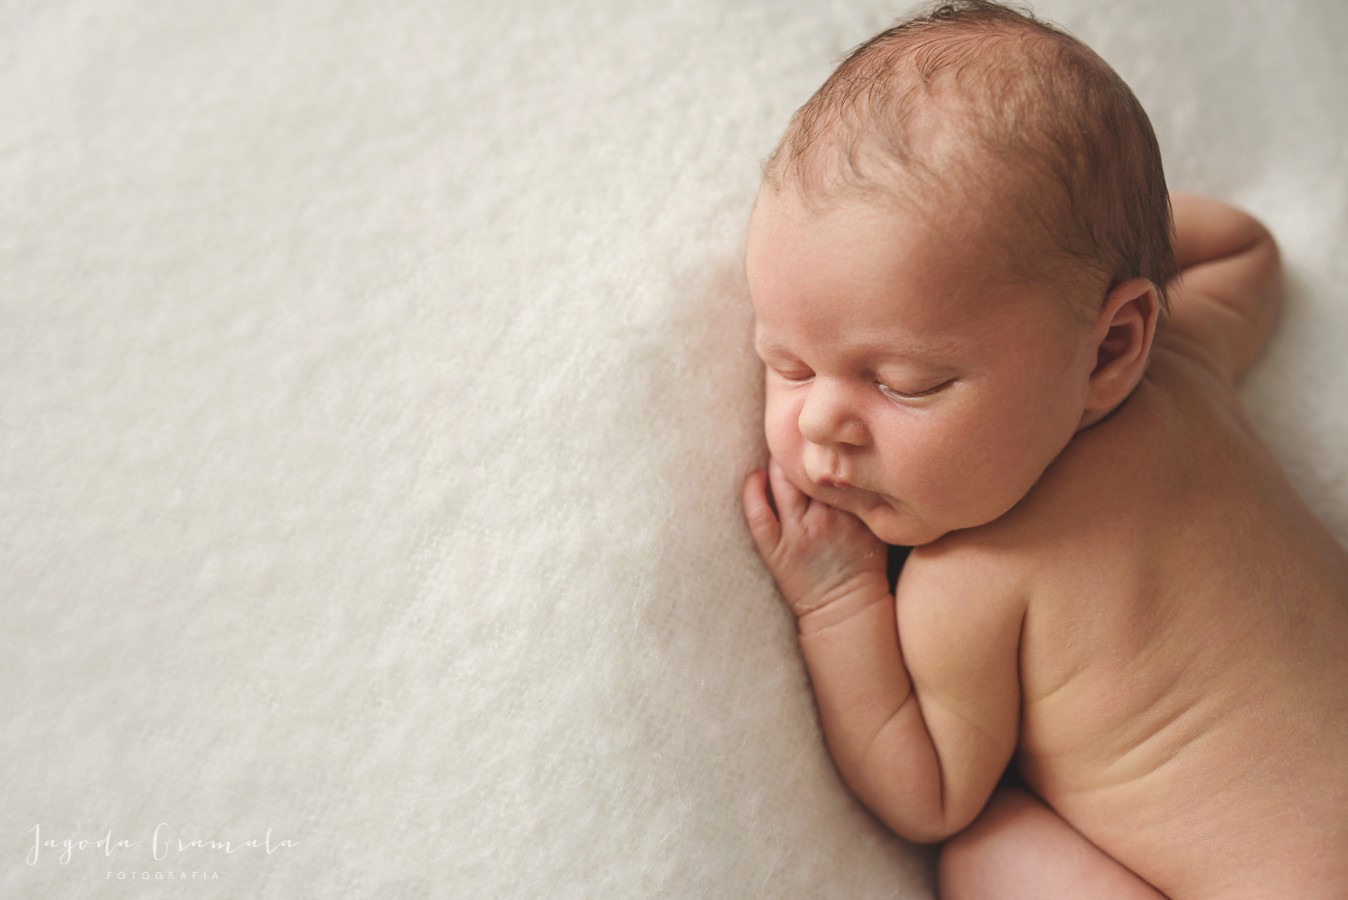 fotograf poznan jagoda-gramala-fotografia portfolio zdjecia noworodkow sesje noworodkowe niemowlę